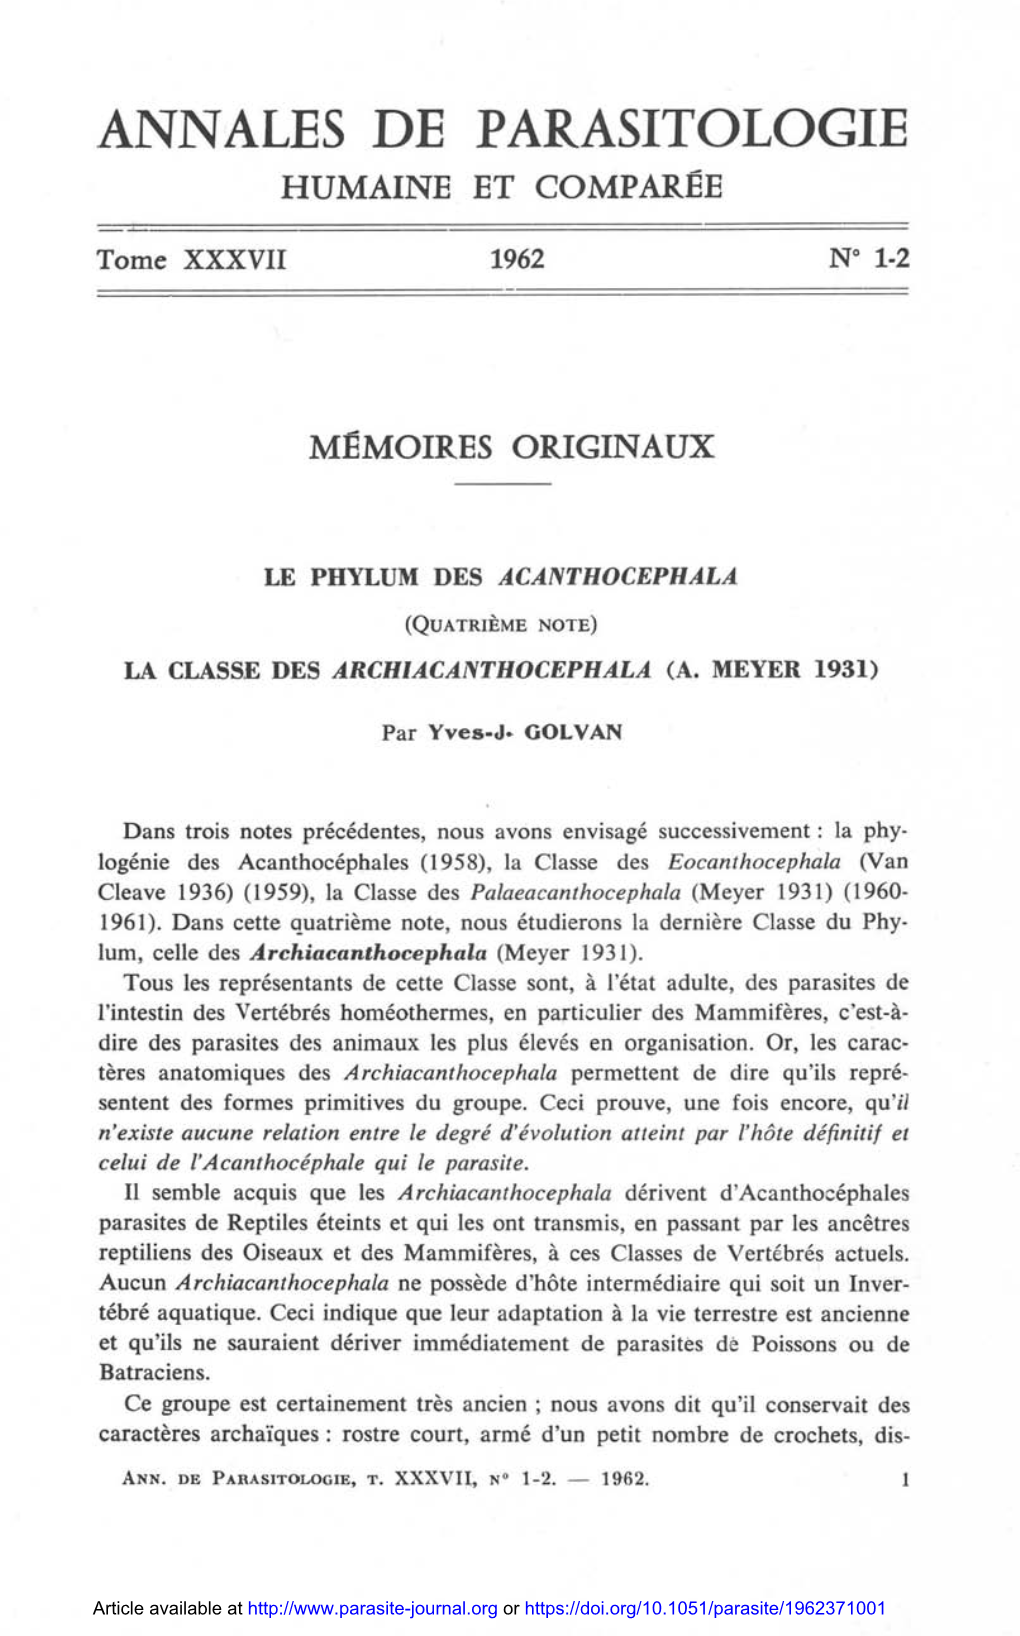 Le Phylum Des Acanthocephala. (Quatrième Note). La Classe Des Archiacanthocephala (A. Meyer 1931)